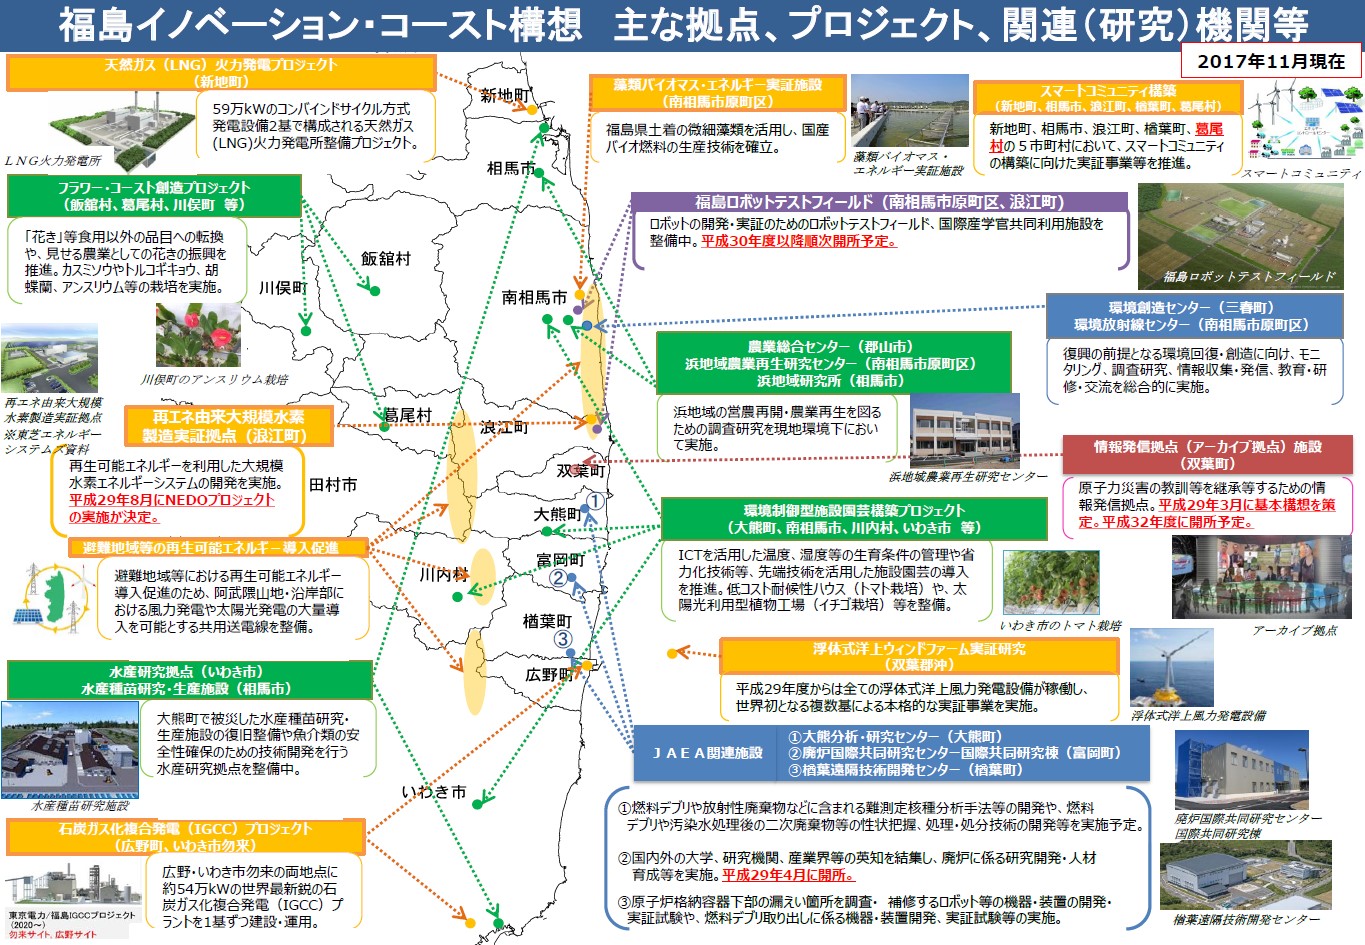 図 1-8 福島イノベーション・コースト構想の進展状況（2017年11月時点）